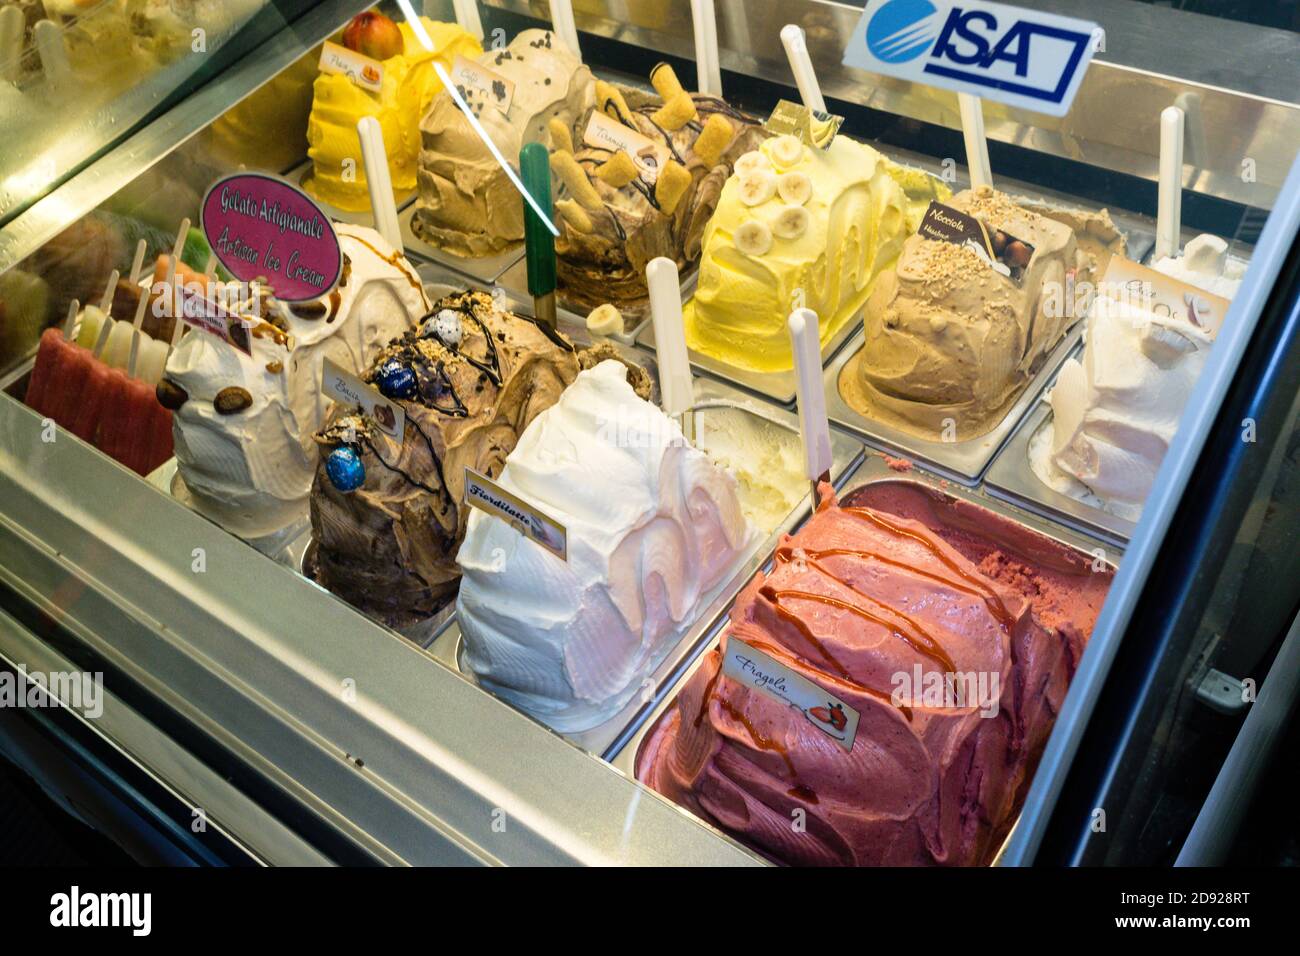 VENISE, ITALIE - 10 octobre 2017 : une grande dose de glace appétissante à l'intérieur d'un congélateur à venise, Italie Banque D'Images